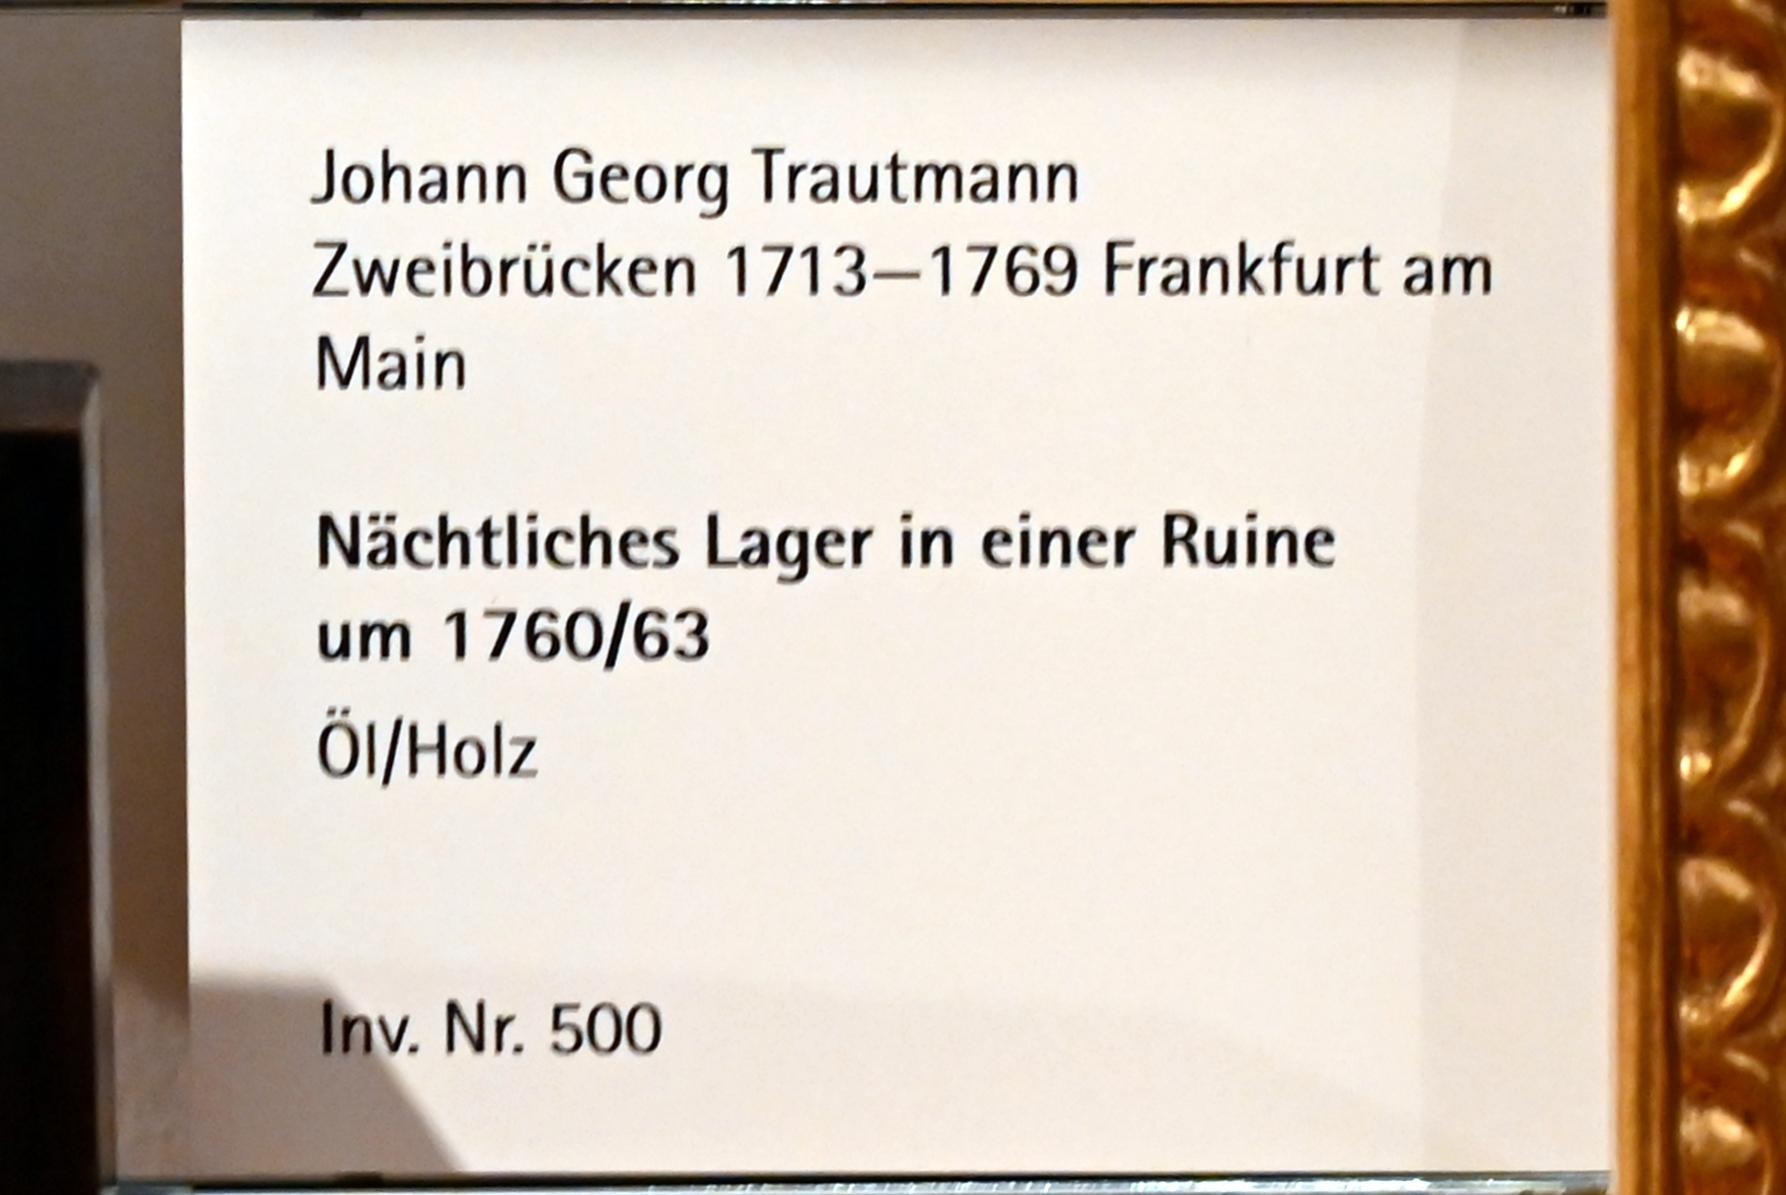 Johann Georg Trautmann (1757–1761), Nächtliches Lager in einer Ruine, Mainz, Landesmuseum, Schaudepot, um 1760–1763, Bild 2/2